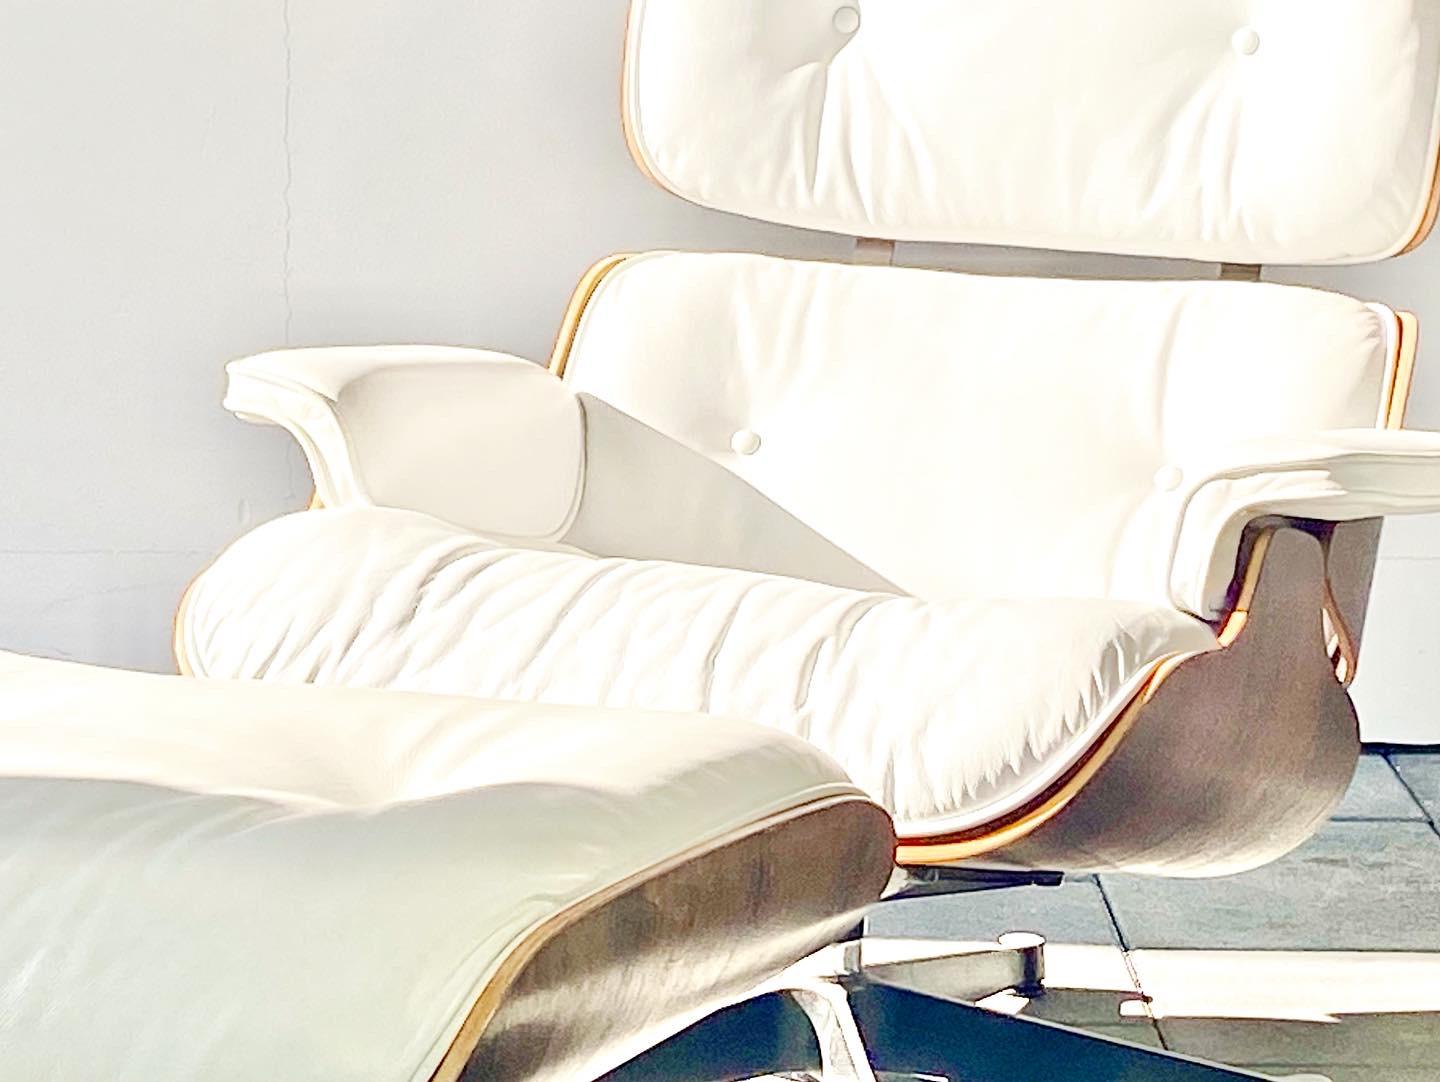 Vitra 671 Eames Lounge chair & ottoman design Charles and Ray Eames.

La chaise et l'ottoman sont recouverts de cuir blanc qui contraste joliment avec le bois de rose. Les coussins en cuir blanc ne sont plus disponibles chez Vitra depuis quelques